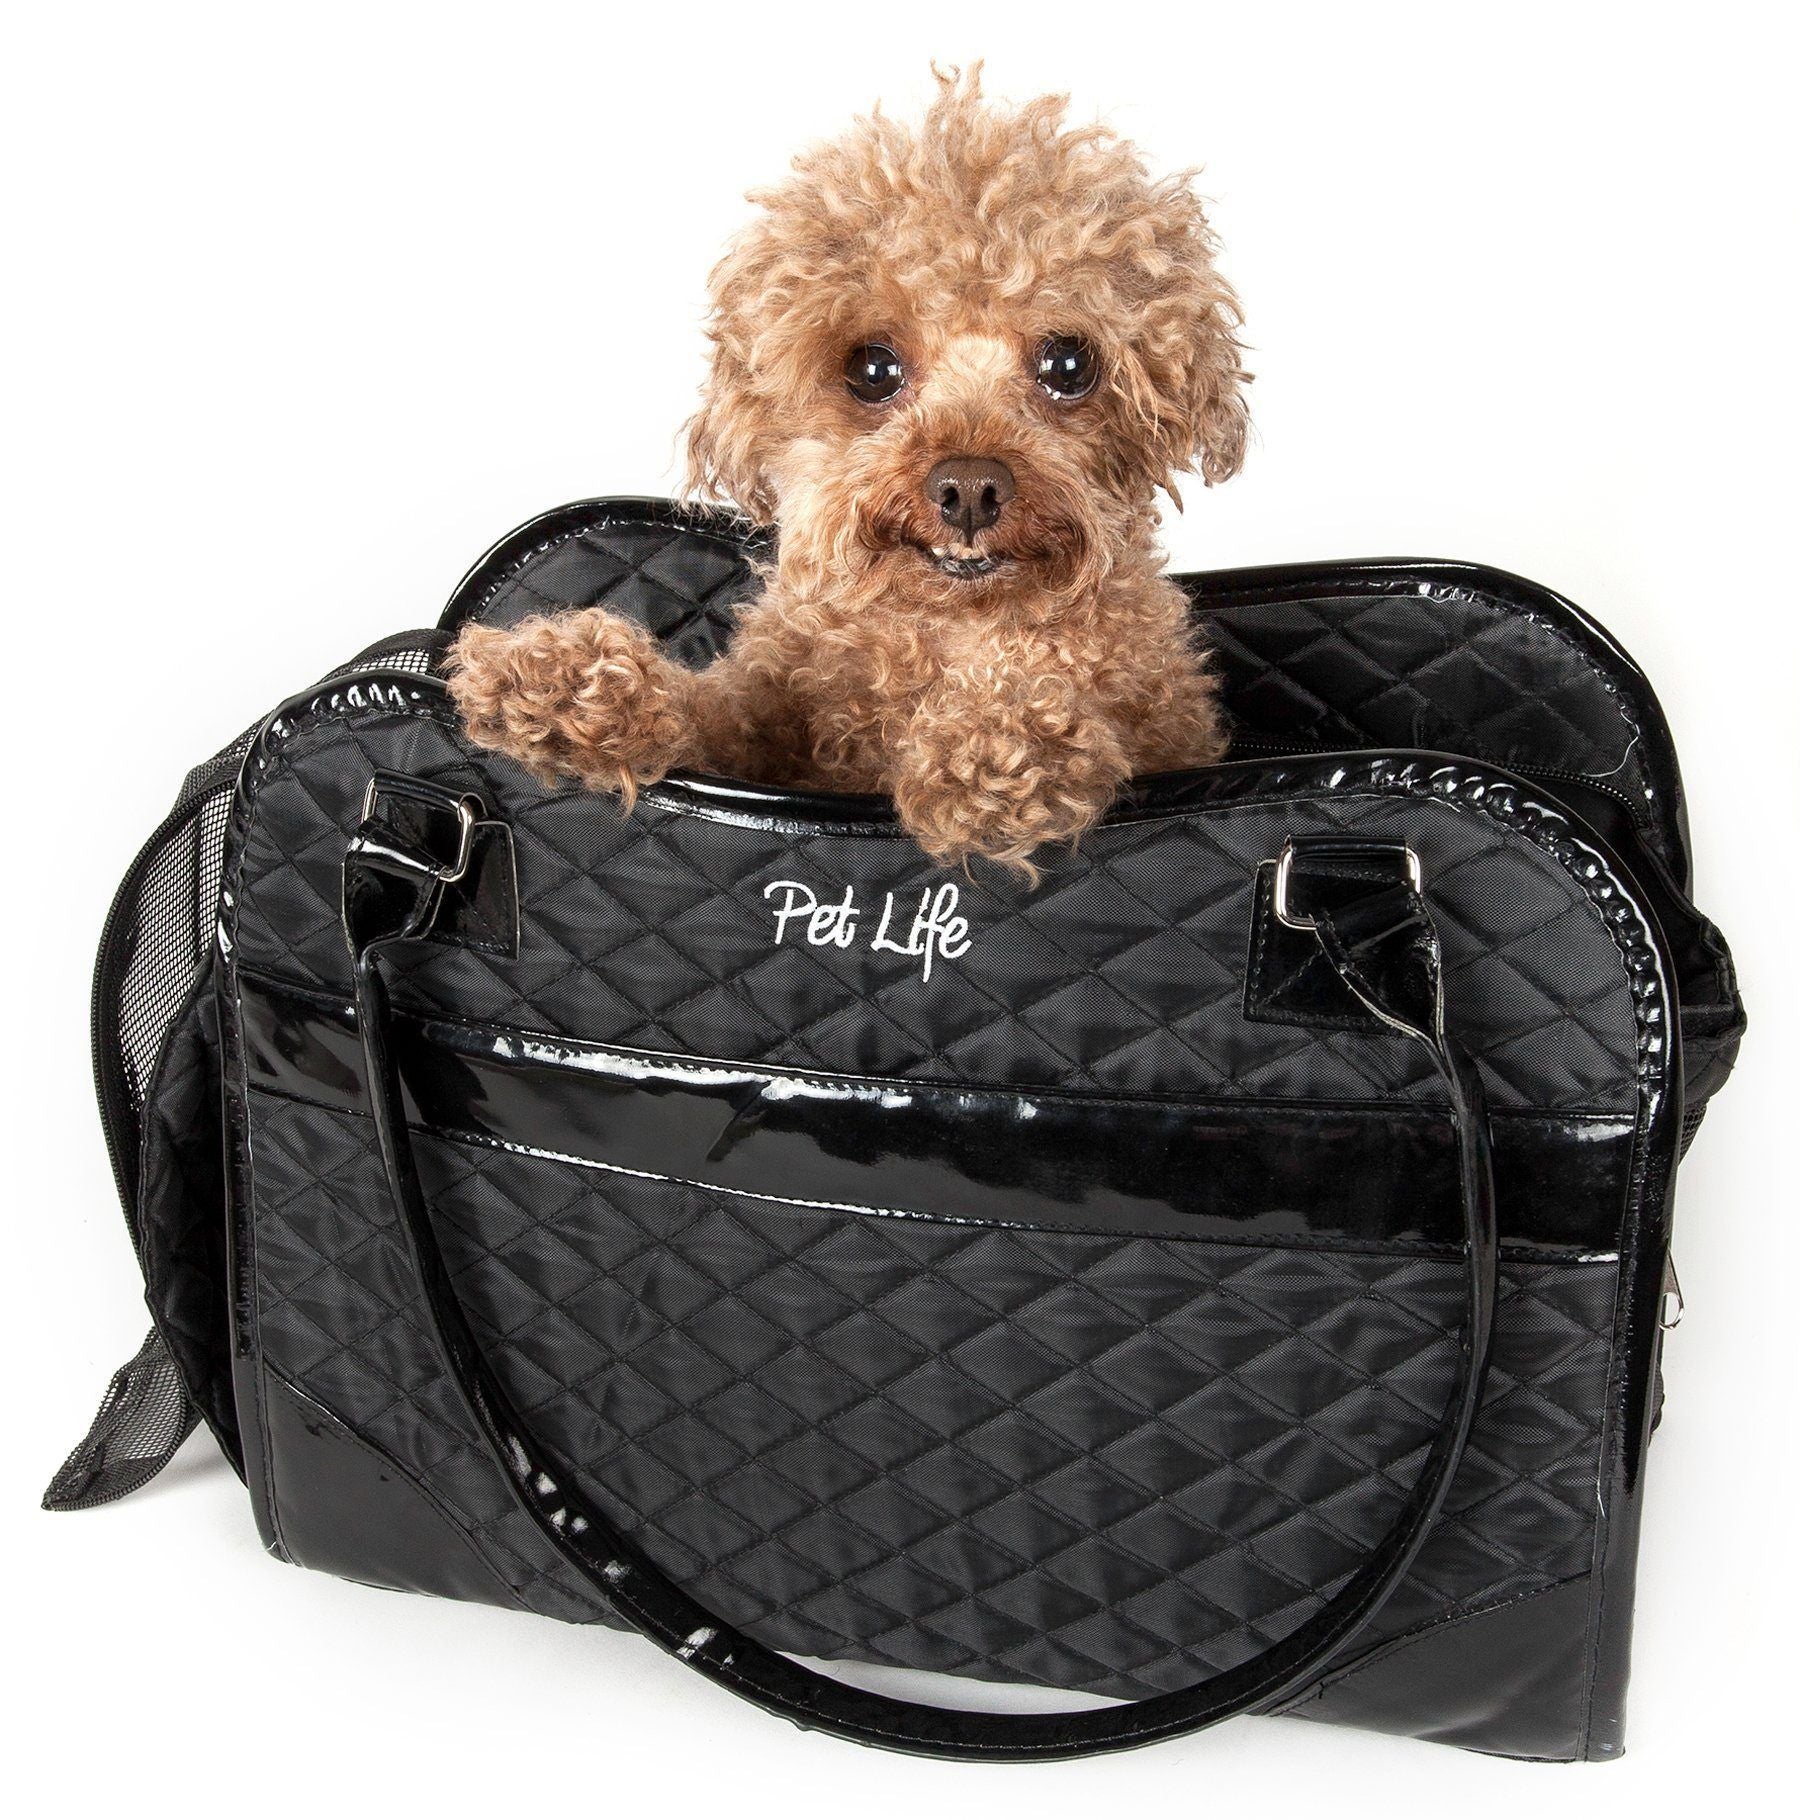 Pet Life ® Exquisite Airline Approved Designer Travel Pet Dog Handbag Carrier Black 